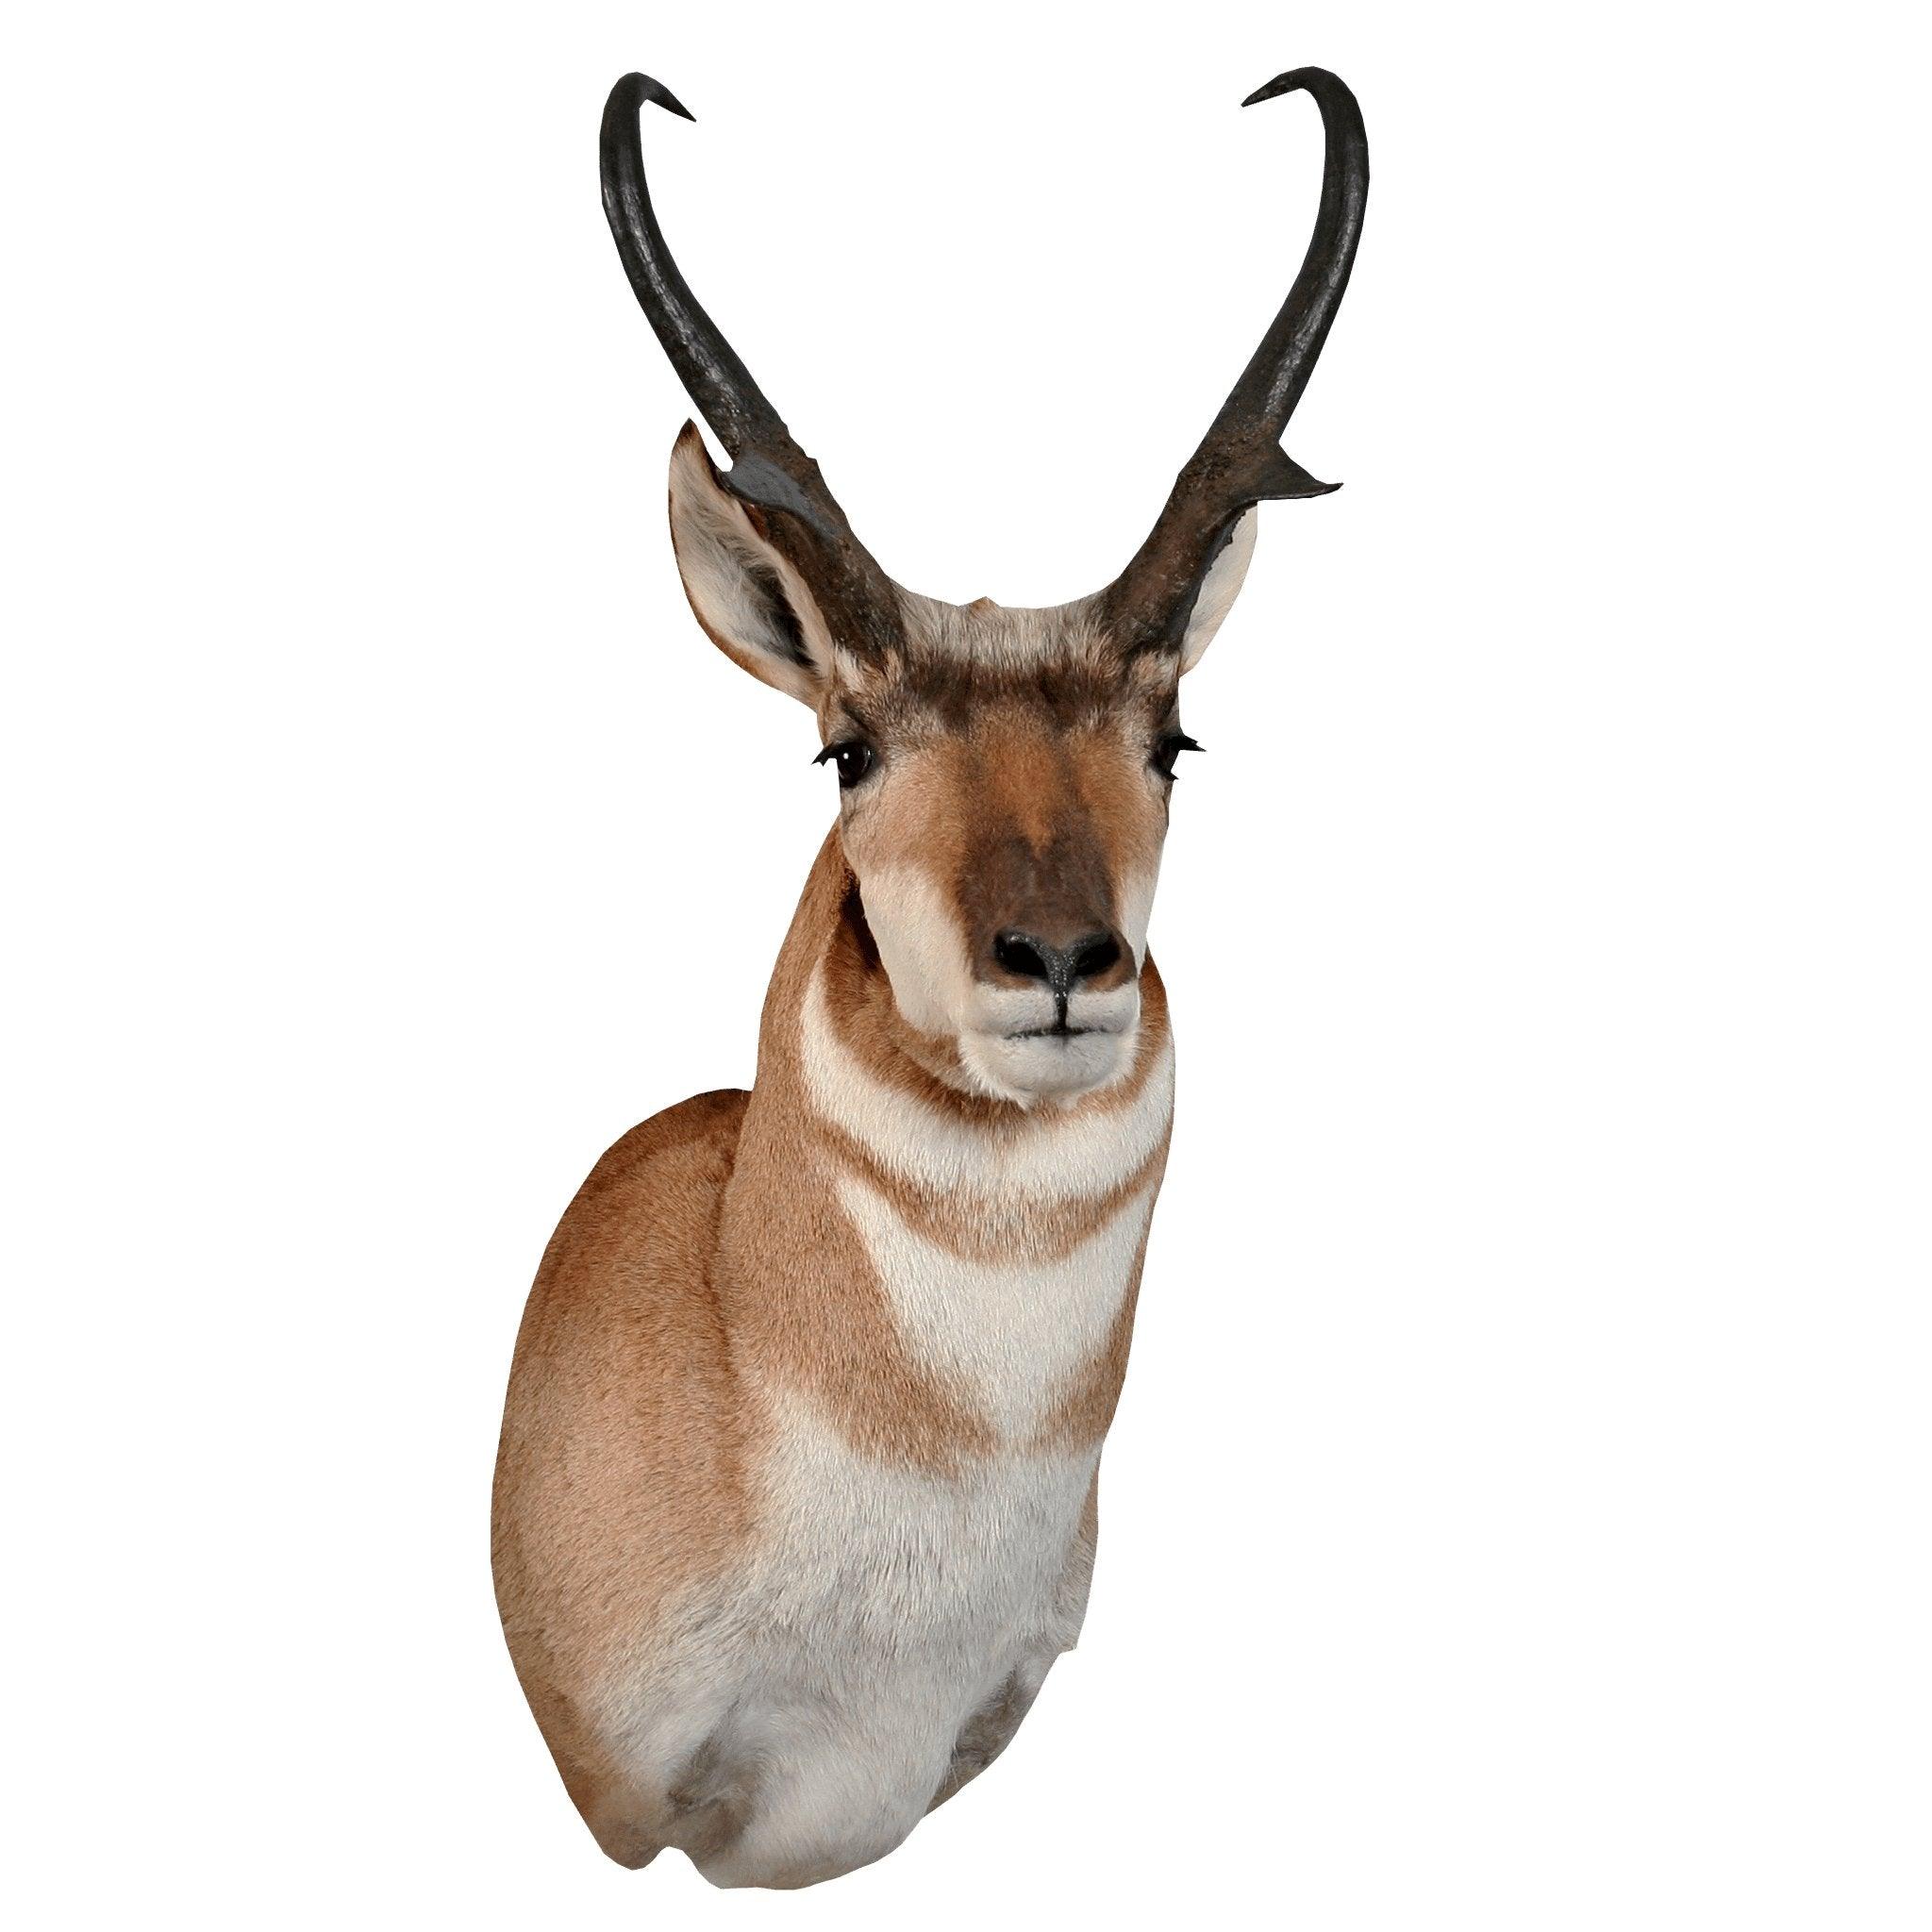 Antelope (Semi-Upright) - Matuska Taxidermy Supply Company